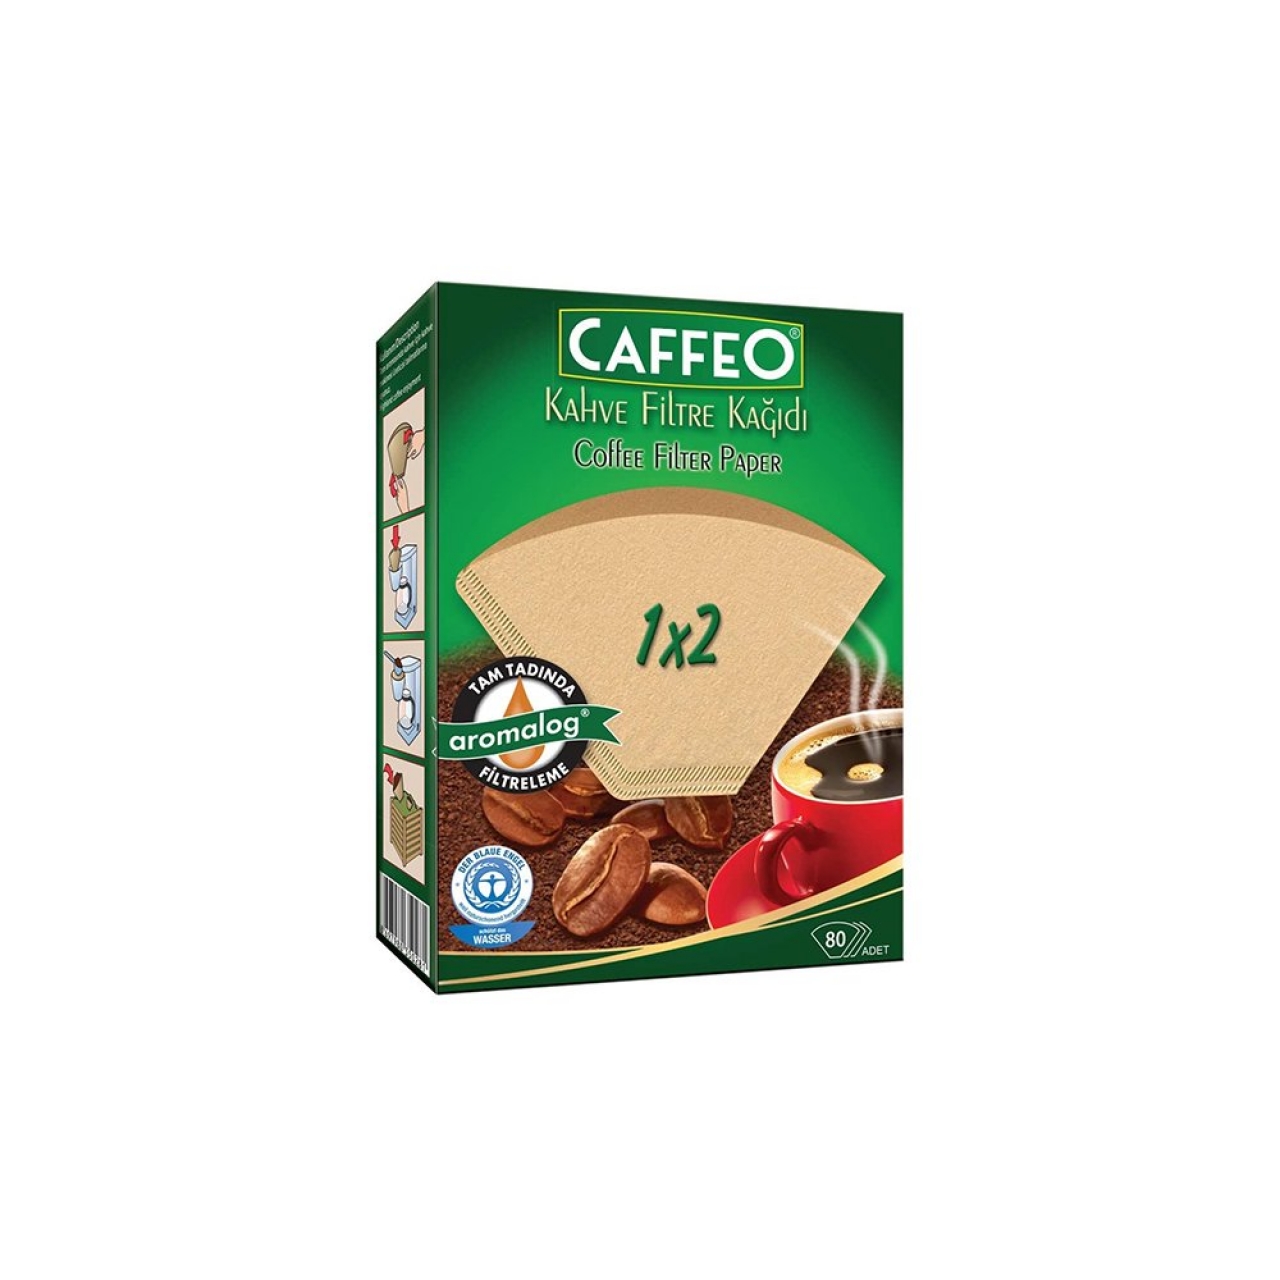 Caffeo Kahve Filtre Kağıdı 1x2 80 Adet (Doğal Kağıt)